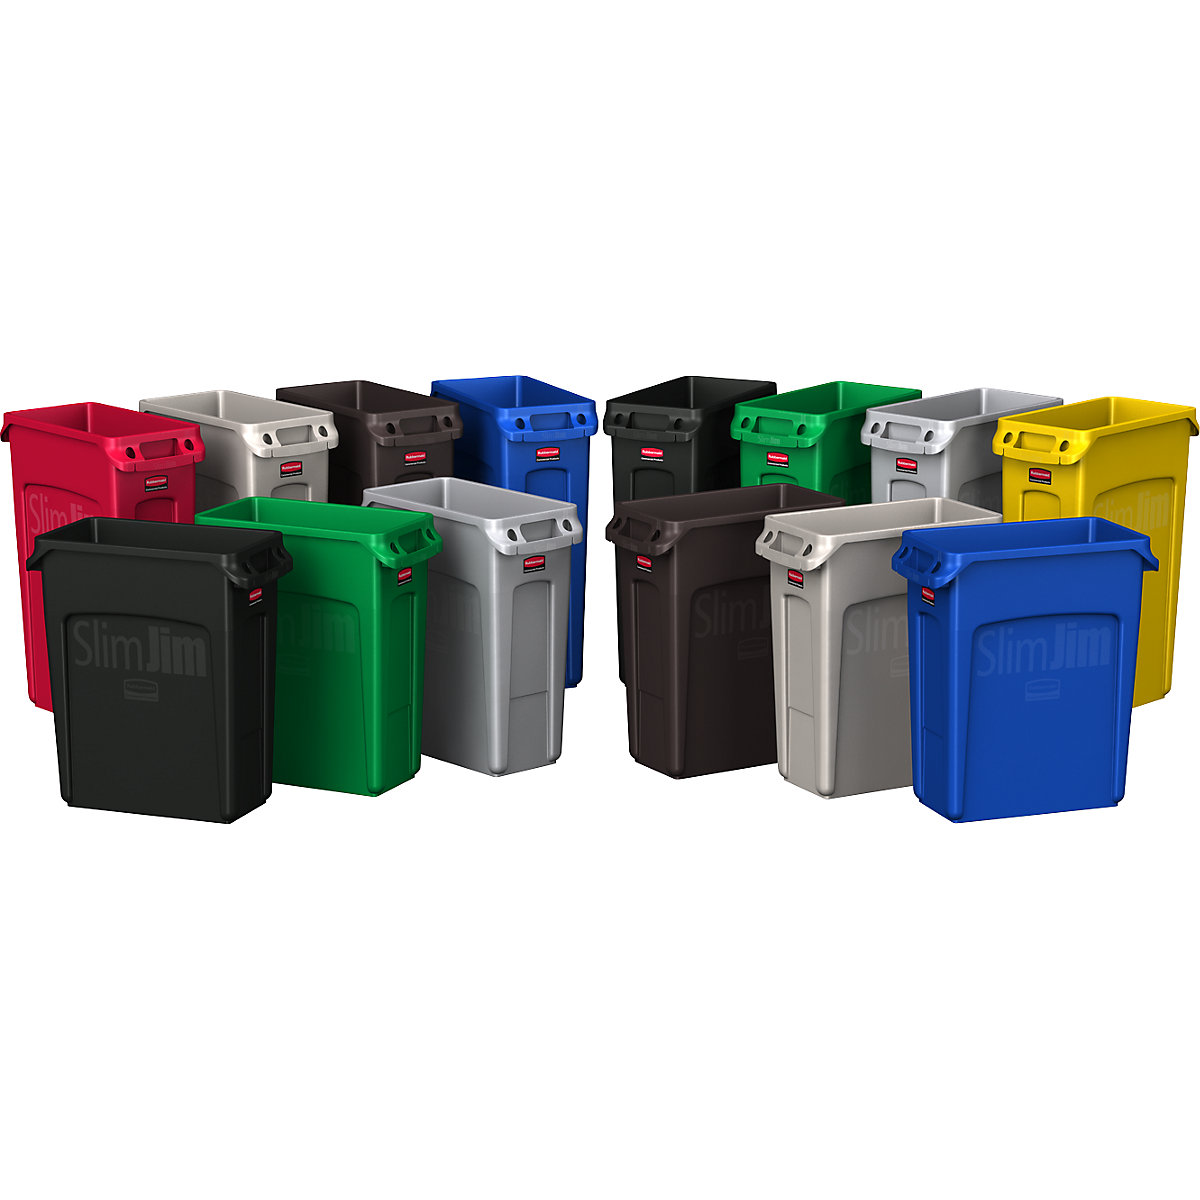 Coletor de materiais recicláveis/balde do lixo SLIM JIM® – Rubbermaid (Imagem do produto 19)-18